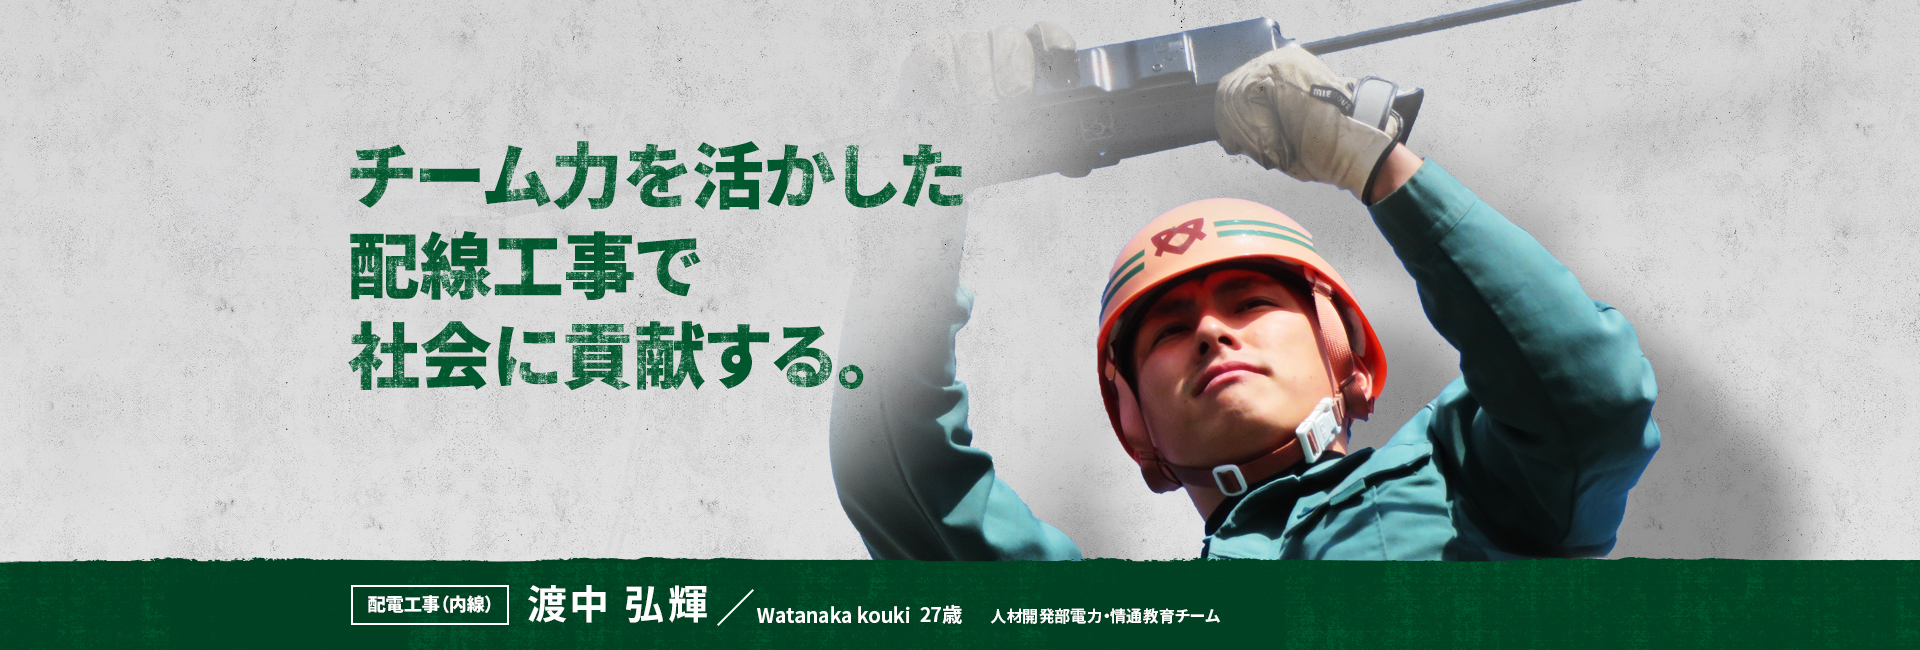 チーム力を活かした配線工事で社会に貢献する。 配電工事（内線） 渡中 弘輝 Watanaka Kouki 人材開発部電力・情通教育チーム